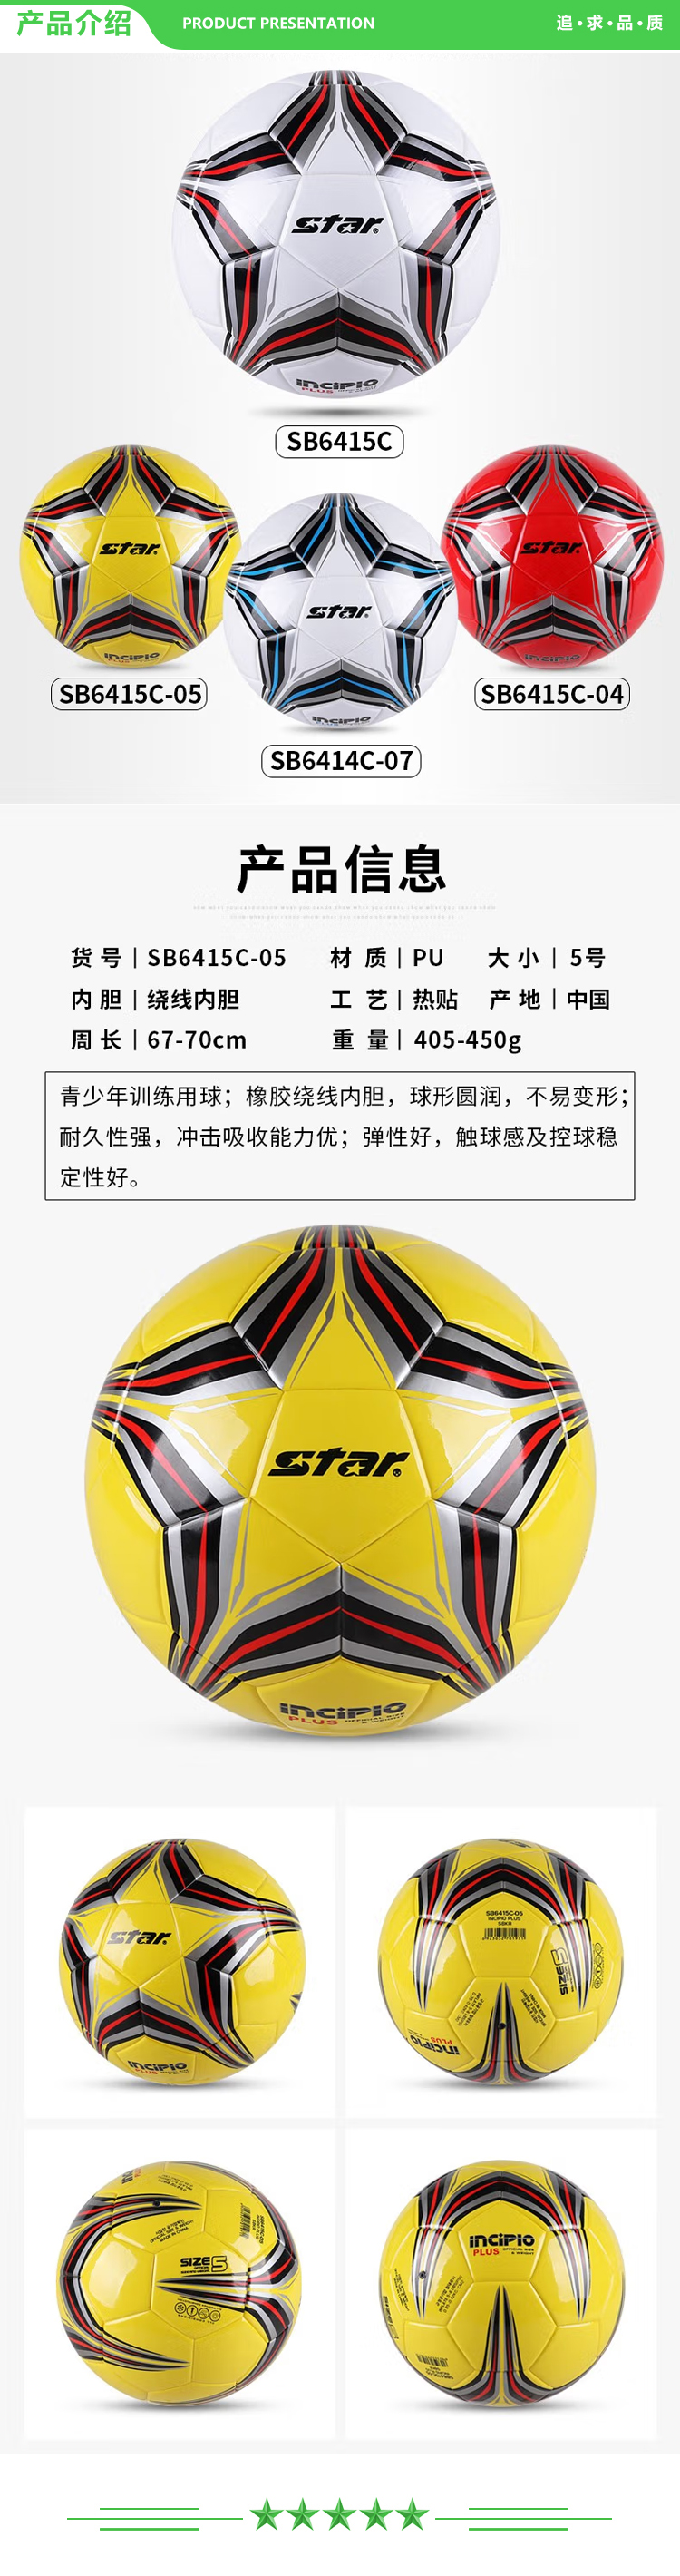 世达 star SB6415-05（5号中学生 成人用球）足球 4号中学生儿童青少年训练比赛用球稳定耐磨.jpg